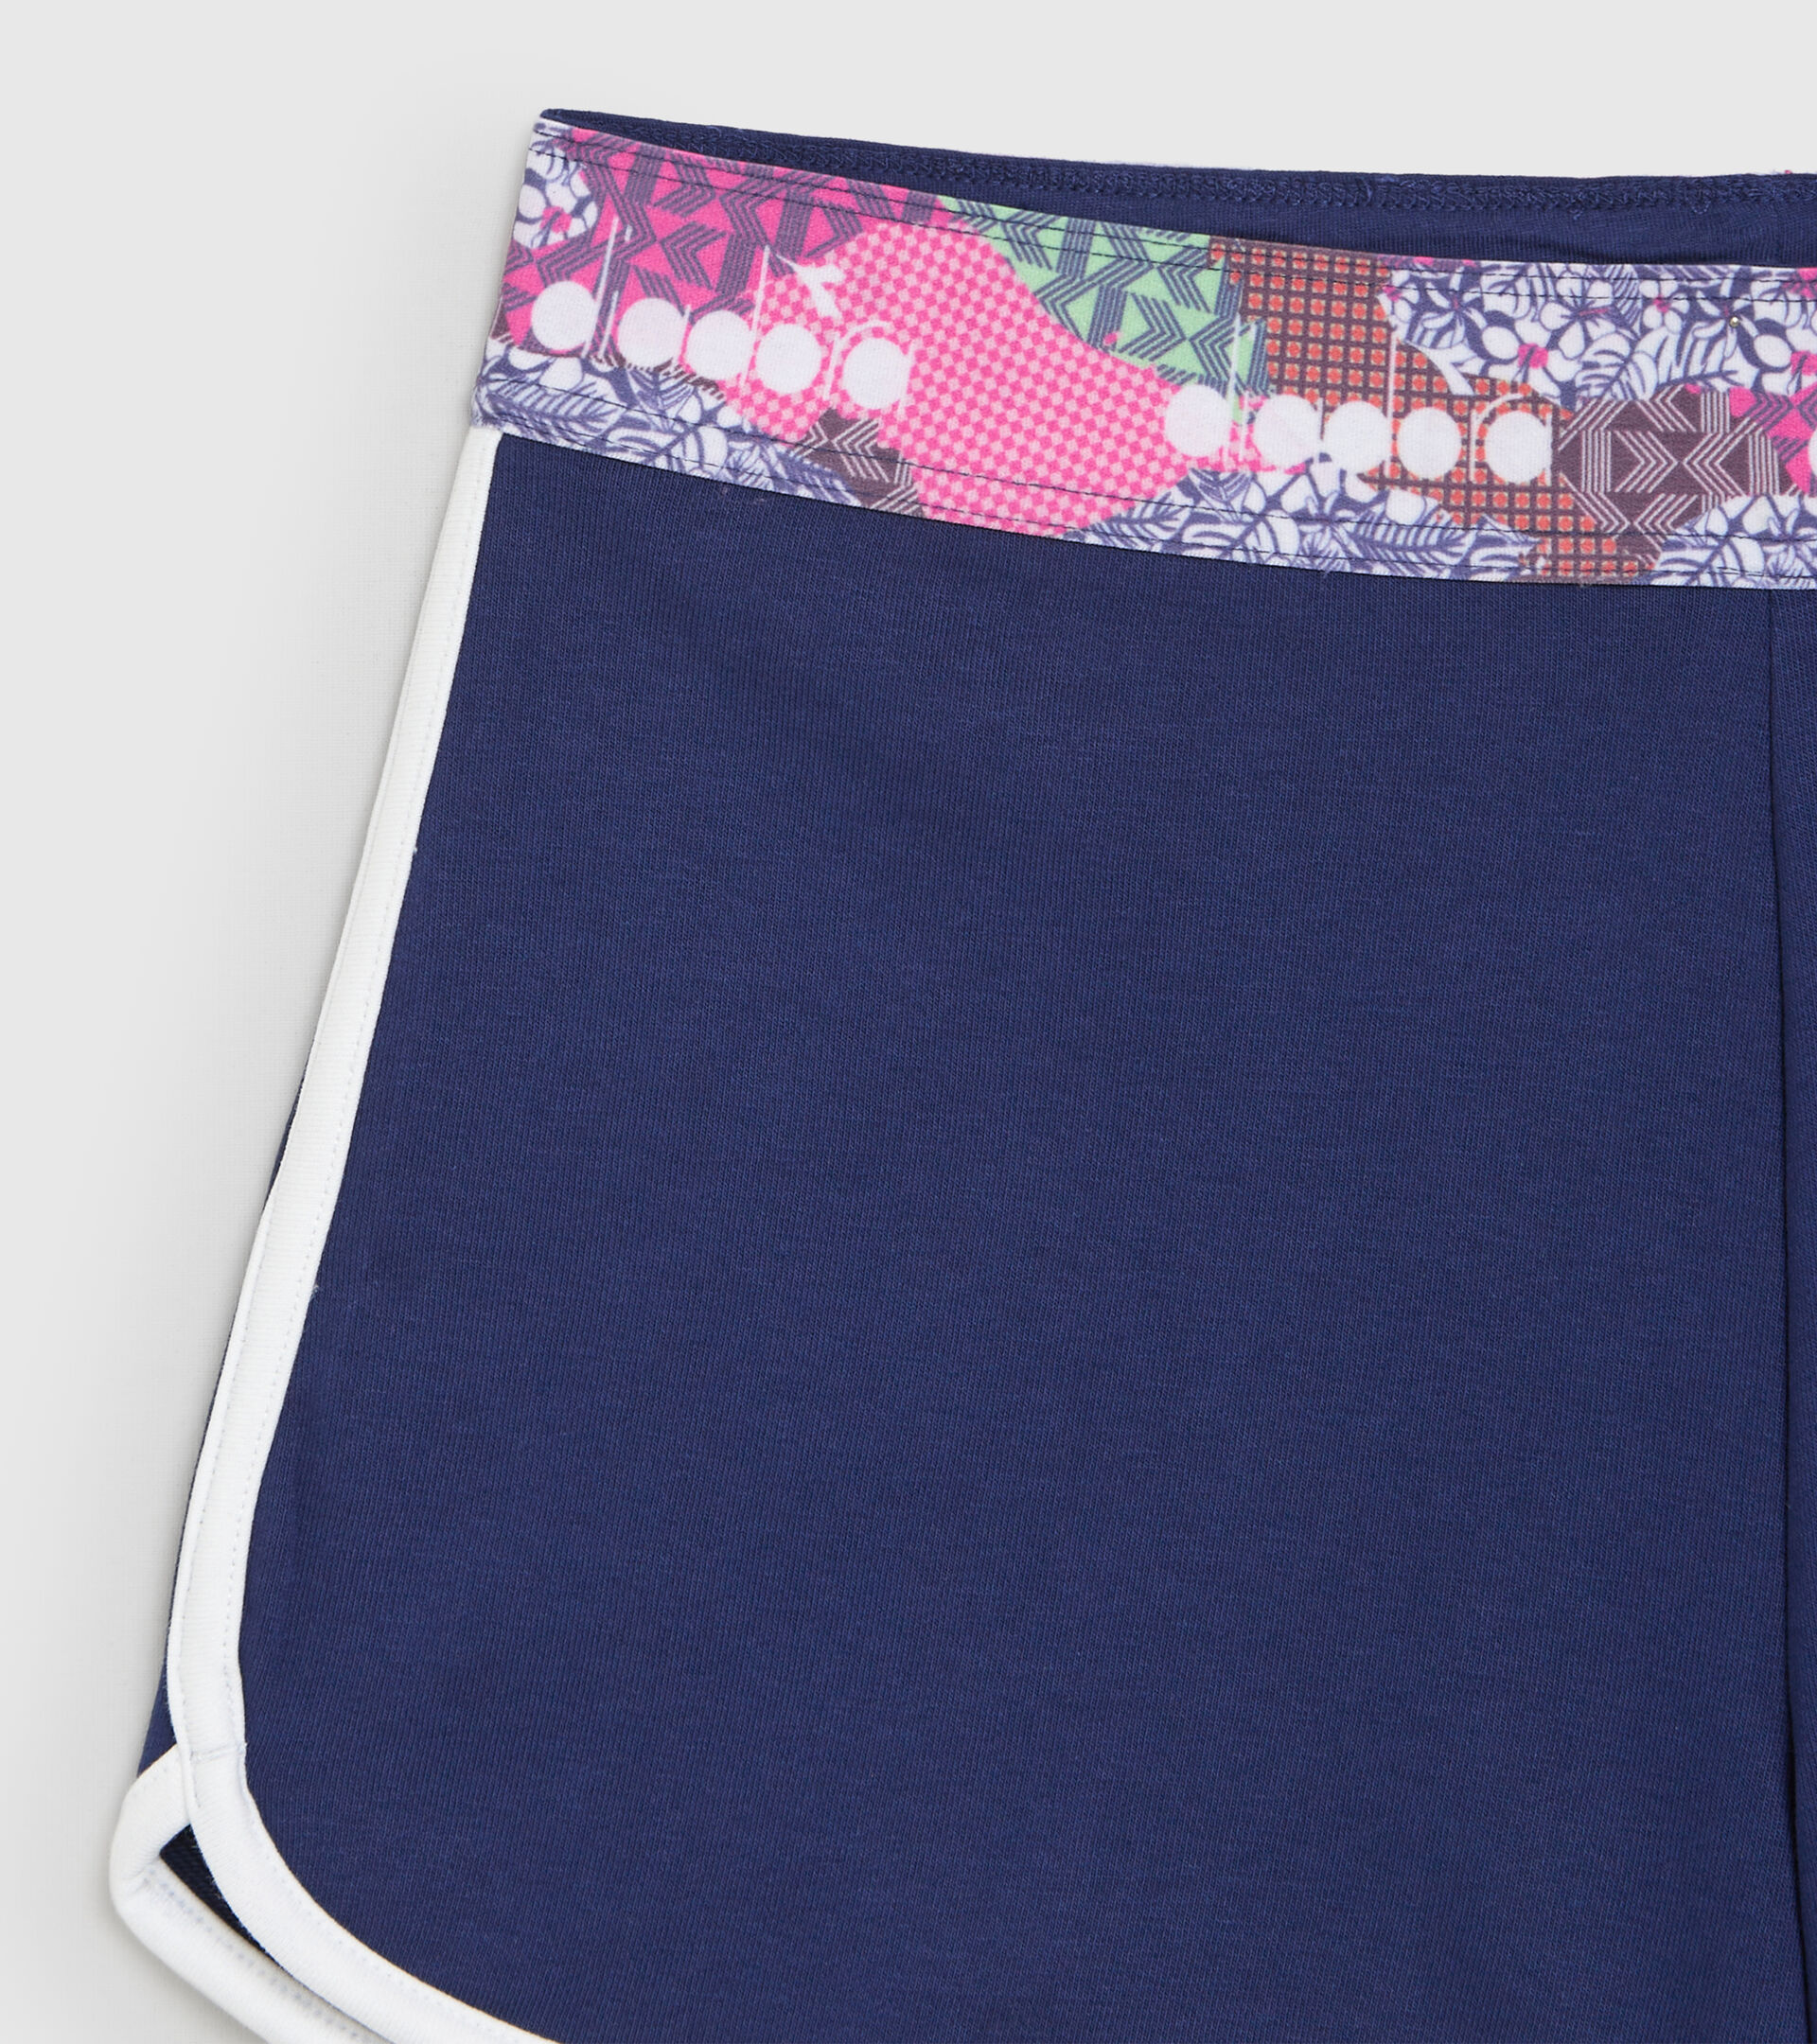 Cotton sports shorts - Women L. SHORT FLOSS DEEP COBALT BLUE - Diadora